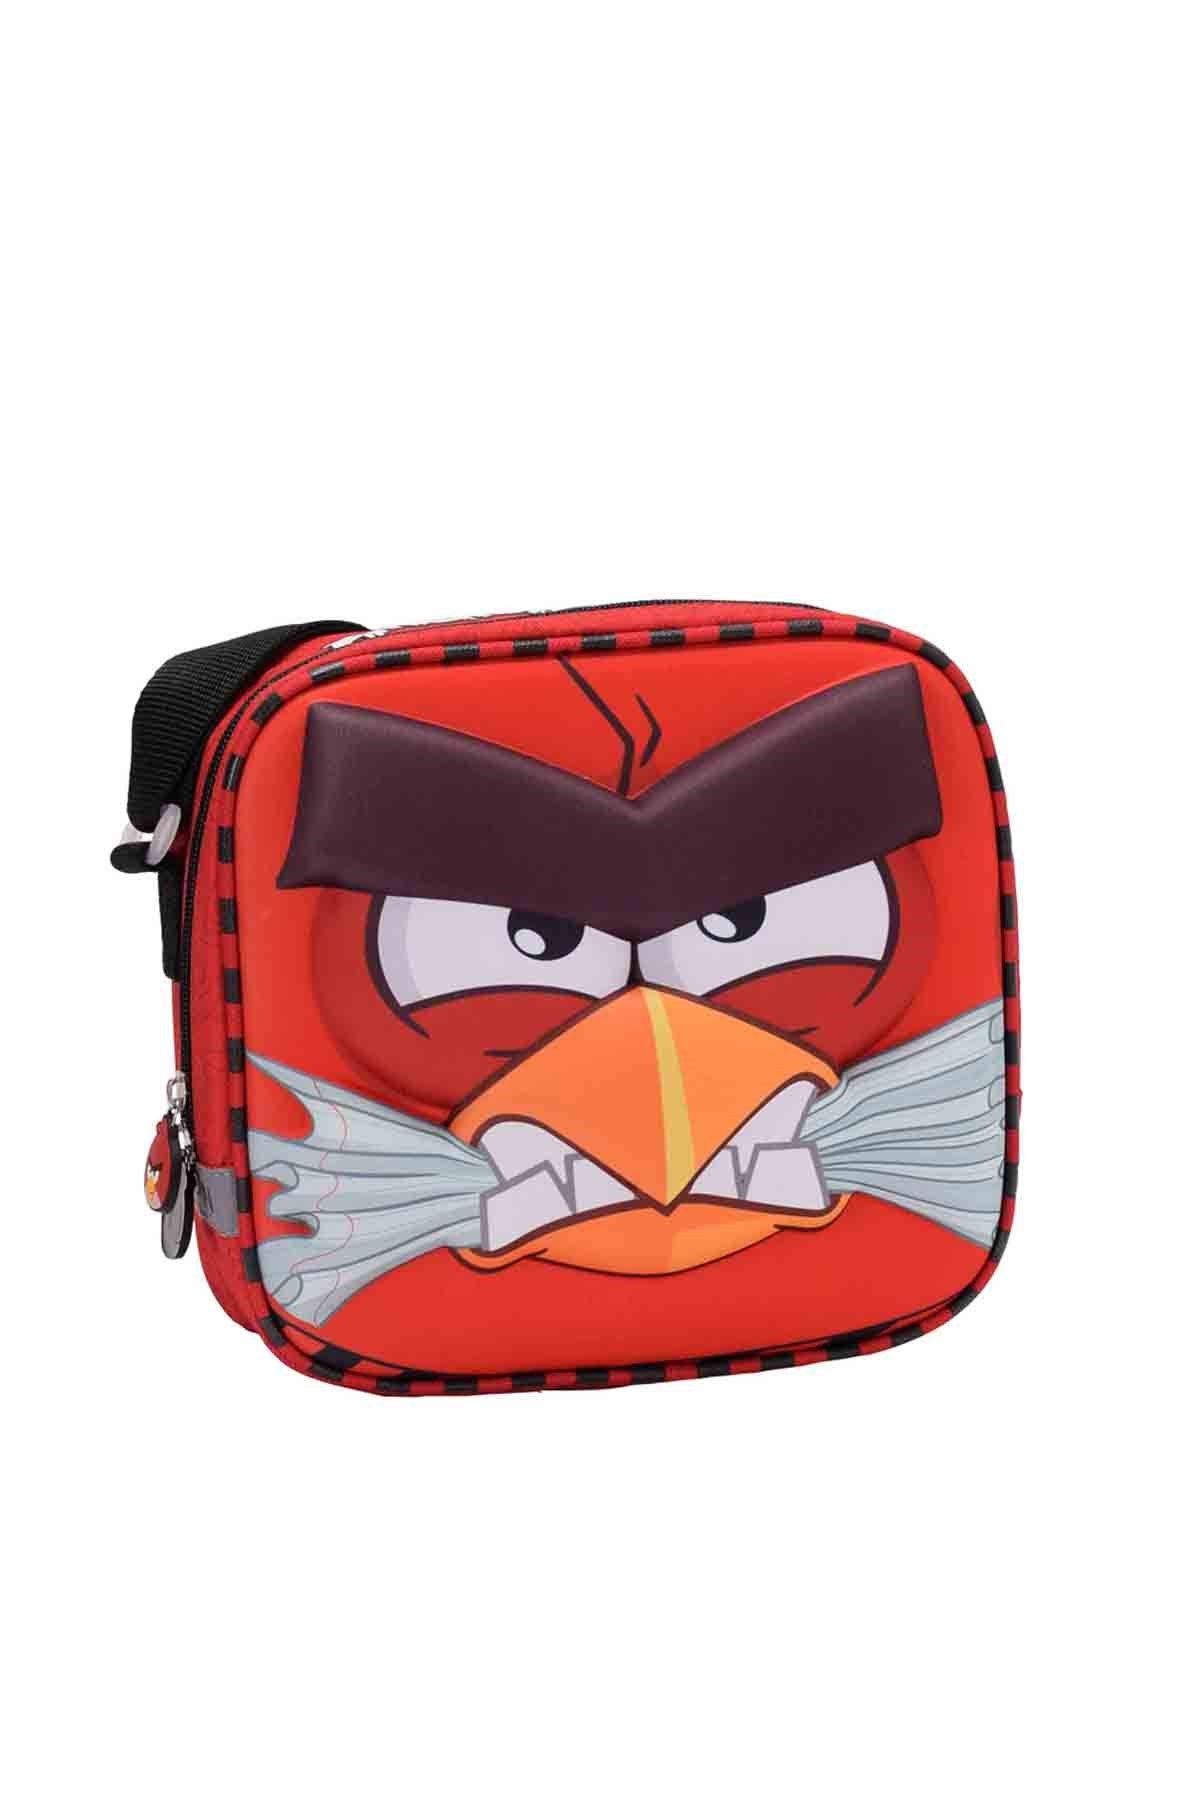 Angry Birds ANGRY BIRDS BESLENME ÇANT Kırmızı Unisex Çocuk Beslenme Çantası 100254612